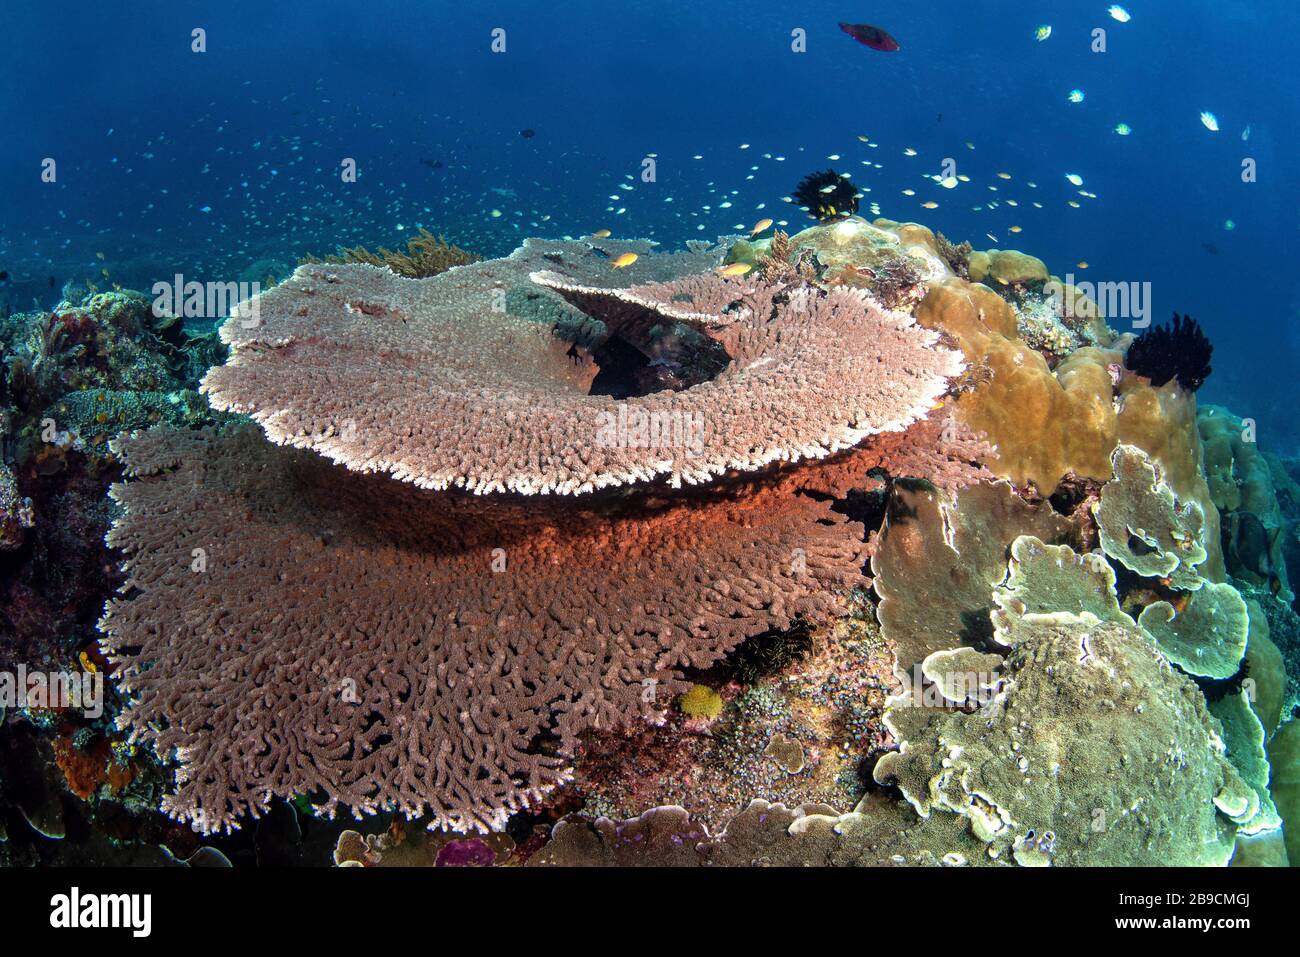 Enormi coralli da tavolo coprono una barriera corallina in Indonesia che brulica di pesce. Foto Stock